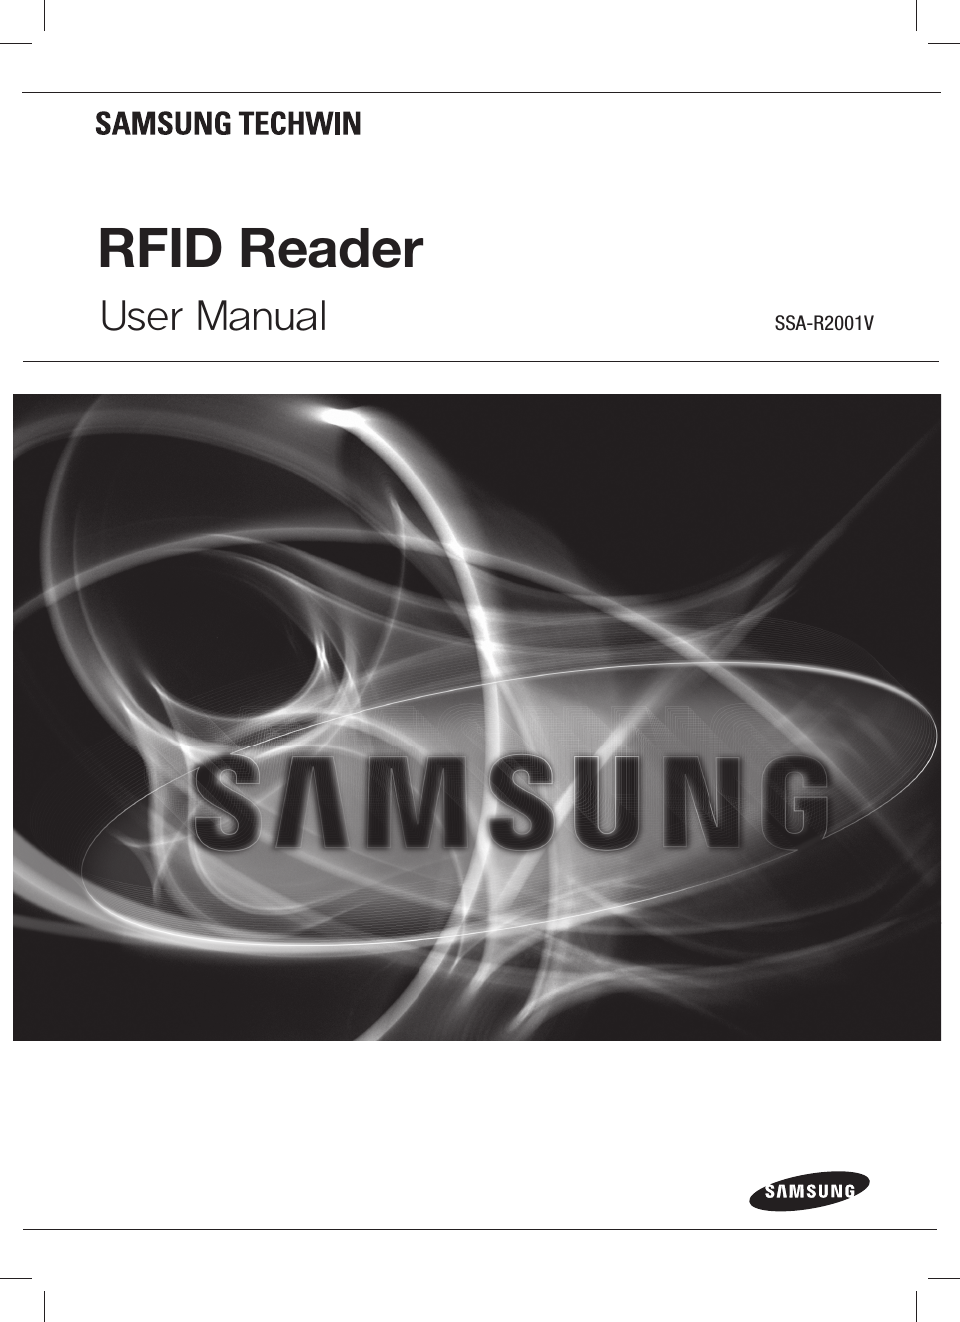 RFID ReaderUser Manual SSA-R2001V